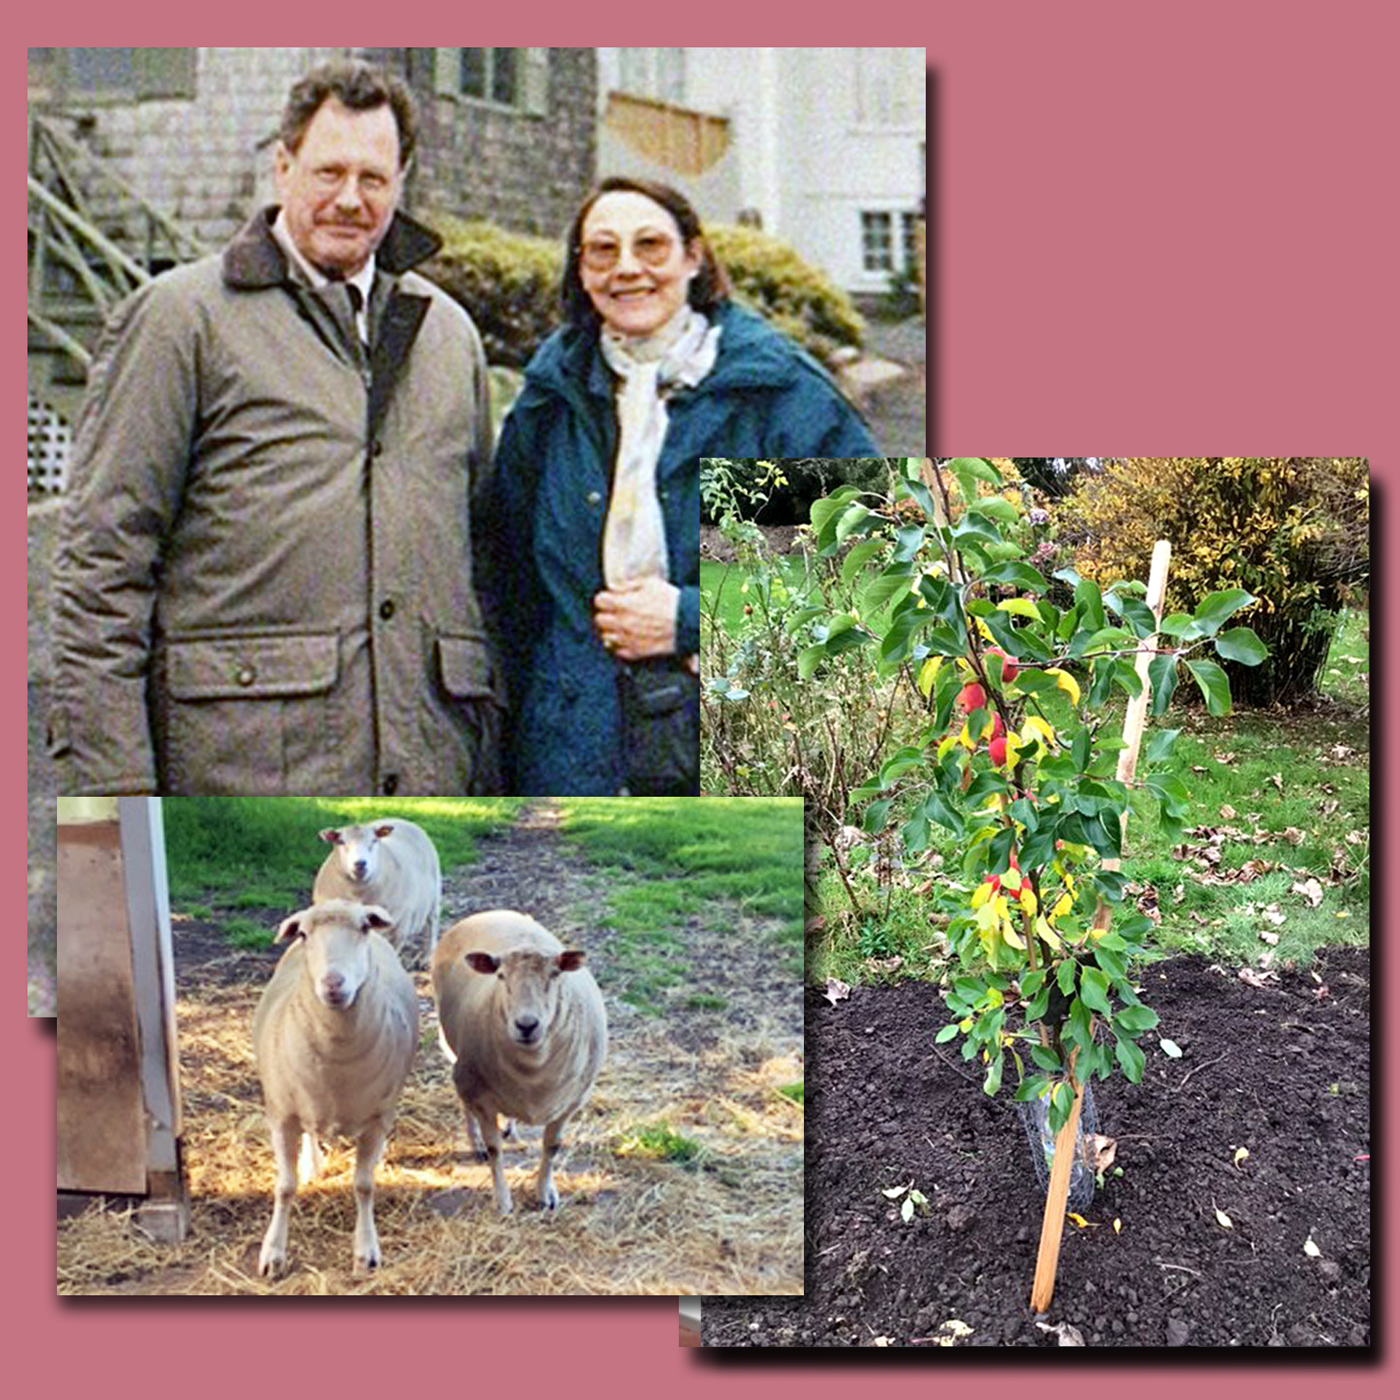 John und Denise im Jahr 2000, ihre Schafe und der Holzapfelbaum